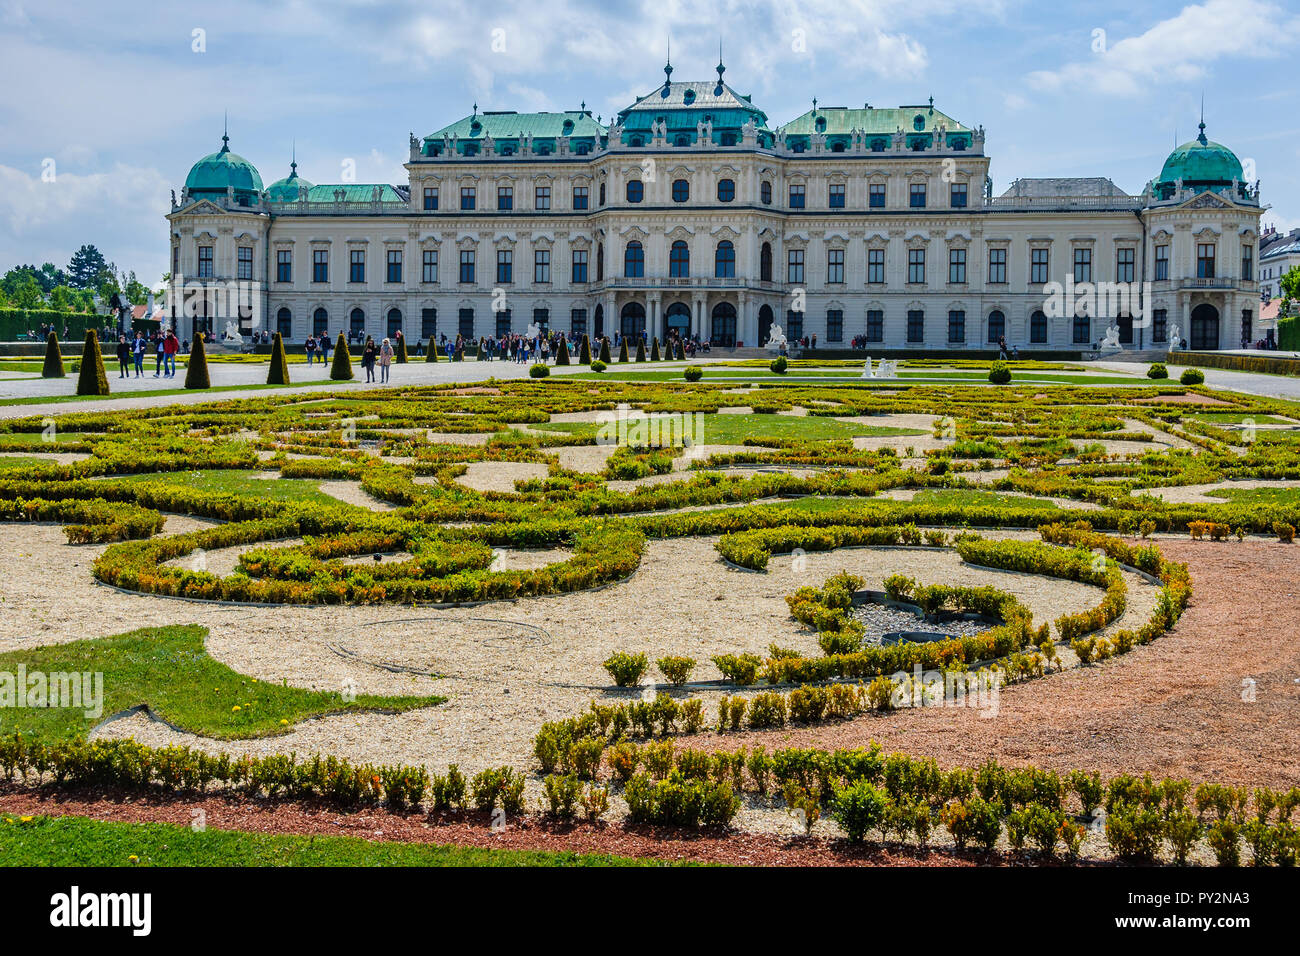 Le jardin du palais du Belvédère dans la ville de Vienne, Autriche Banque D'Images